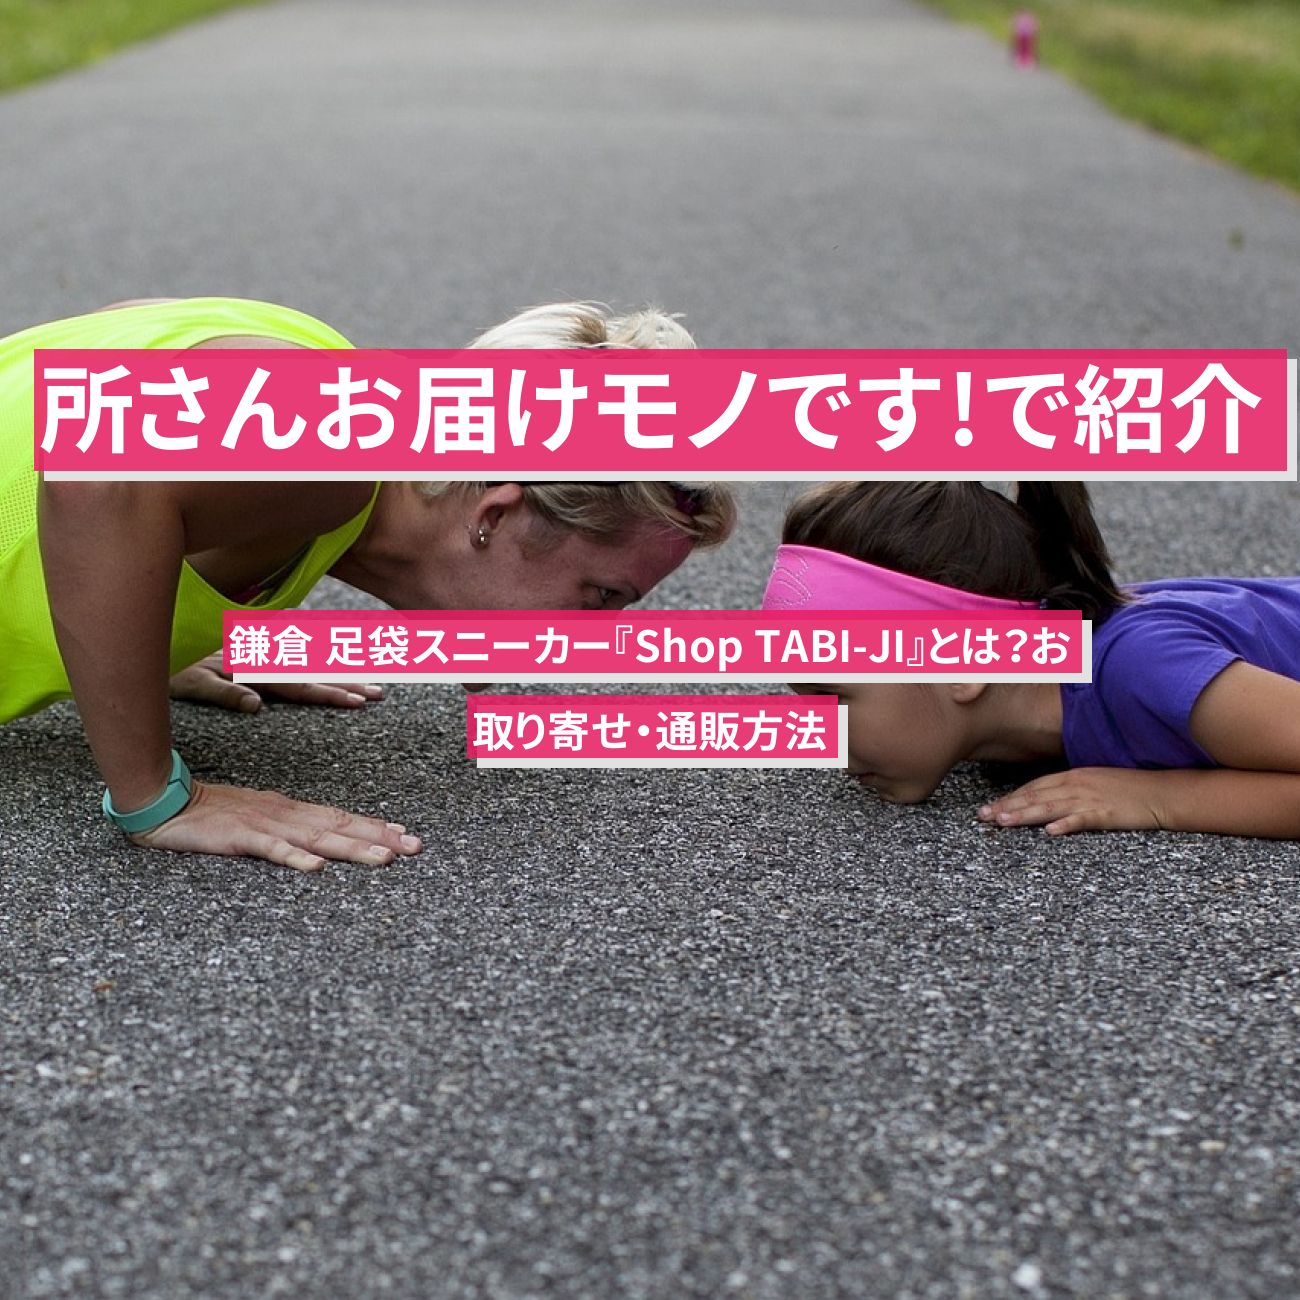 【所さんお届けモノです!で紹介】鎌倉 足袋スニーカー ・たびスリッパ『Shop TABI-JI』とは？お取り寄せ方法